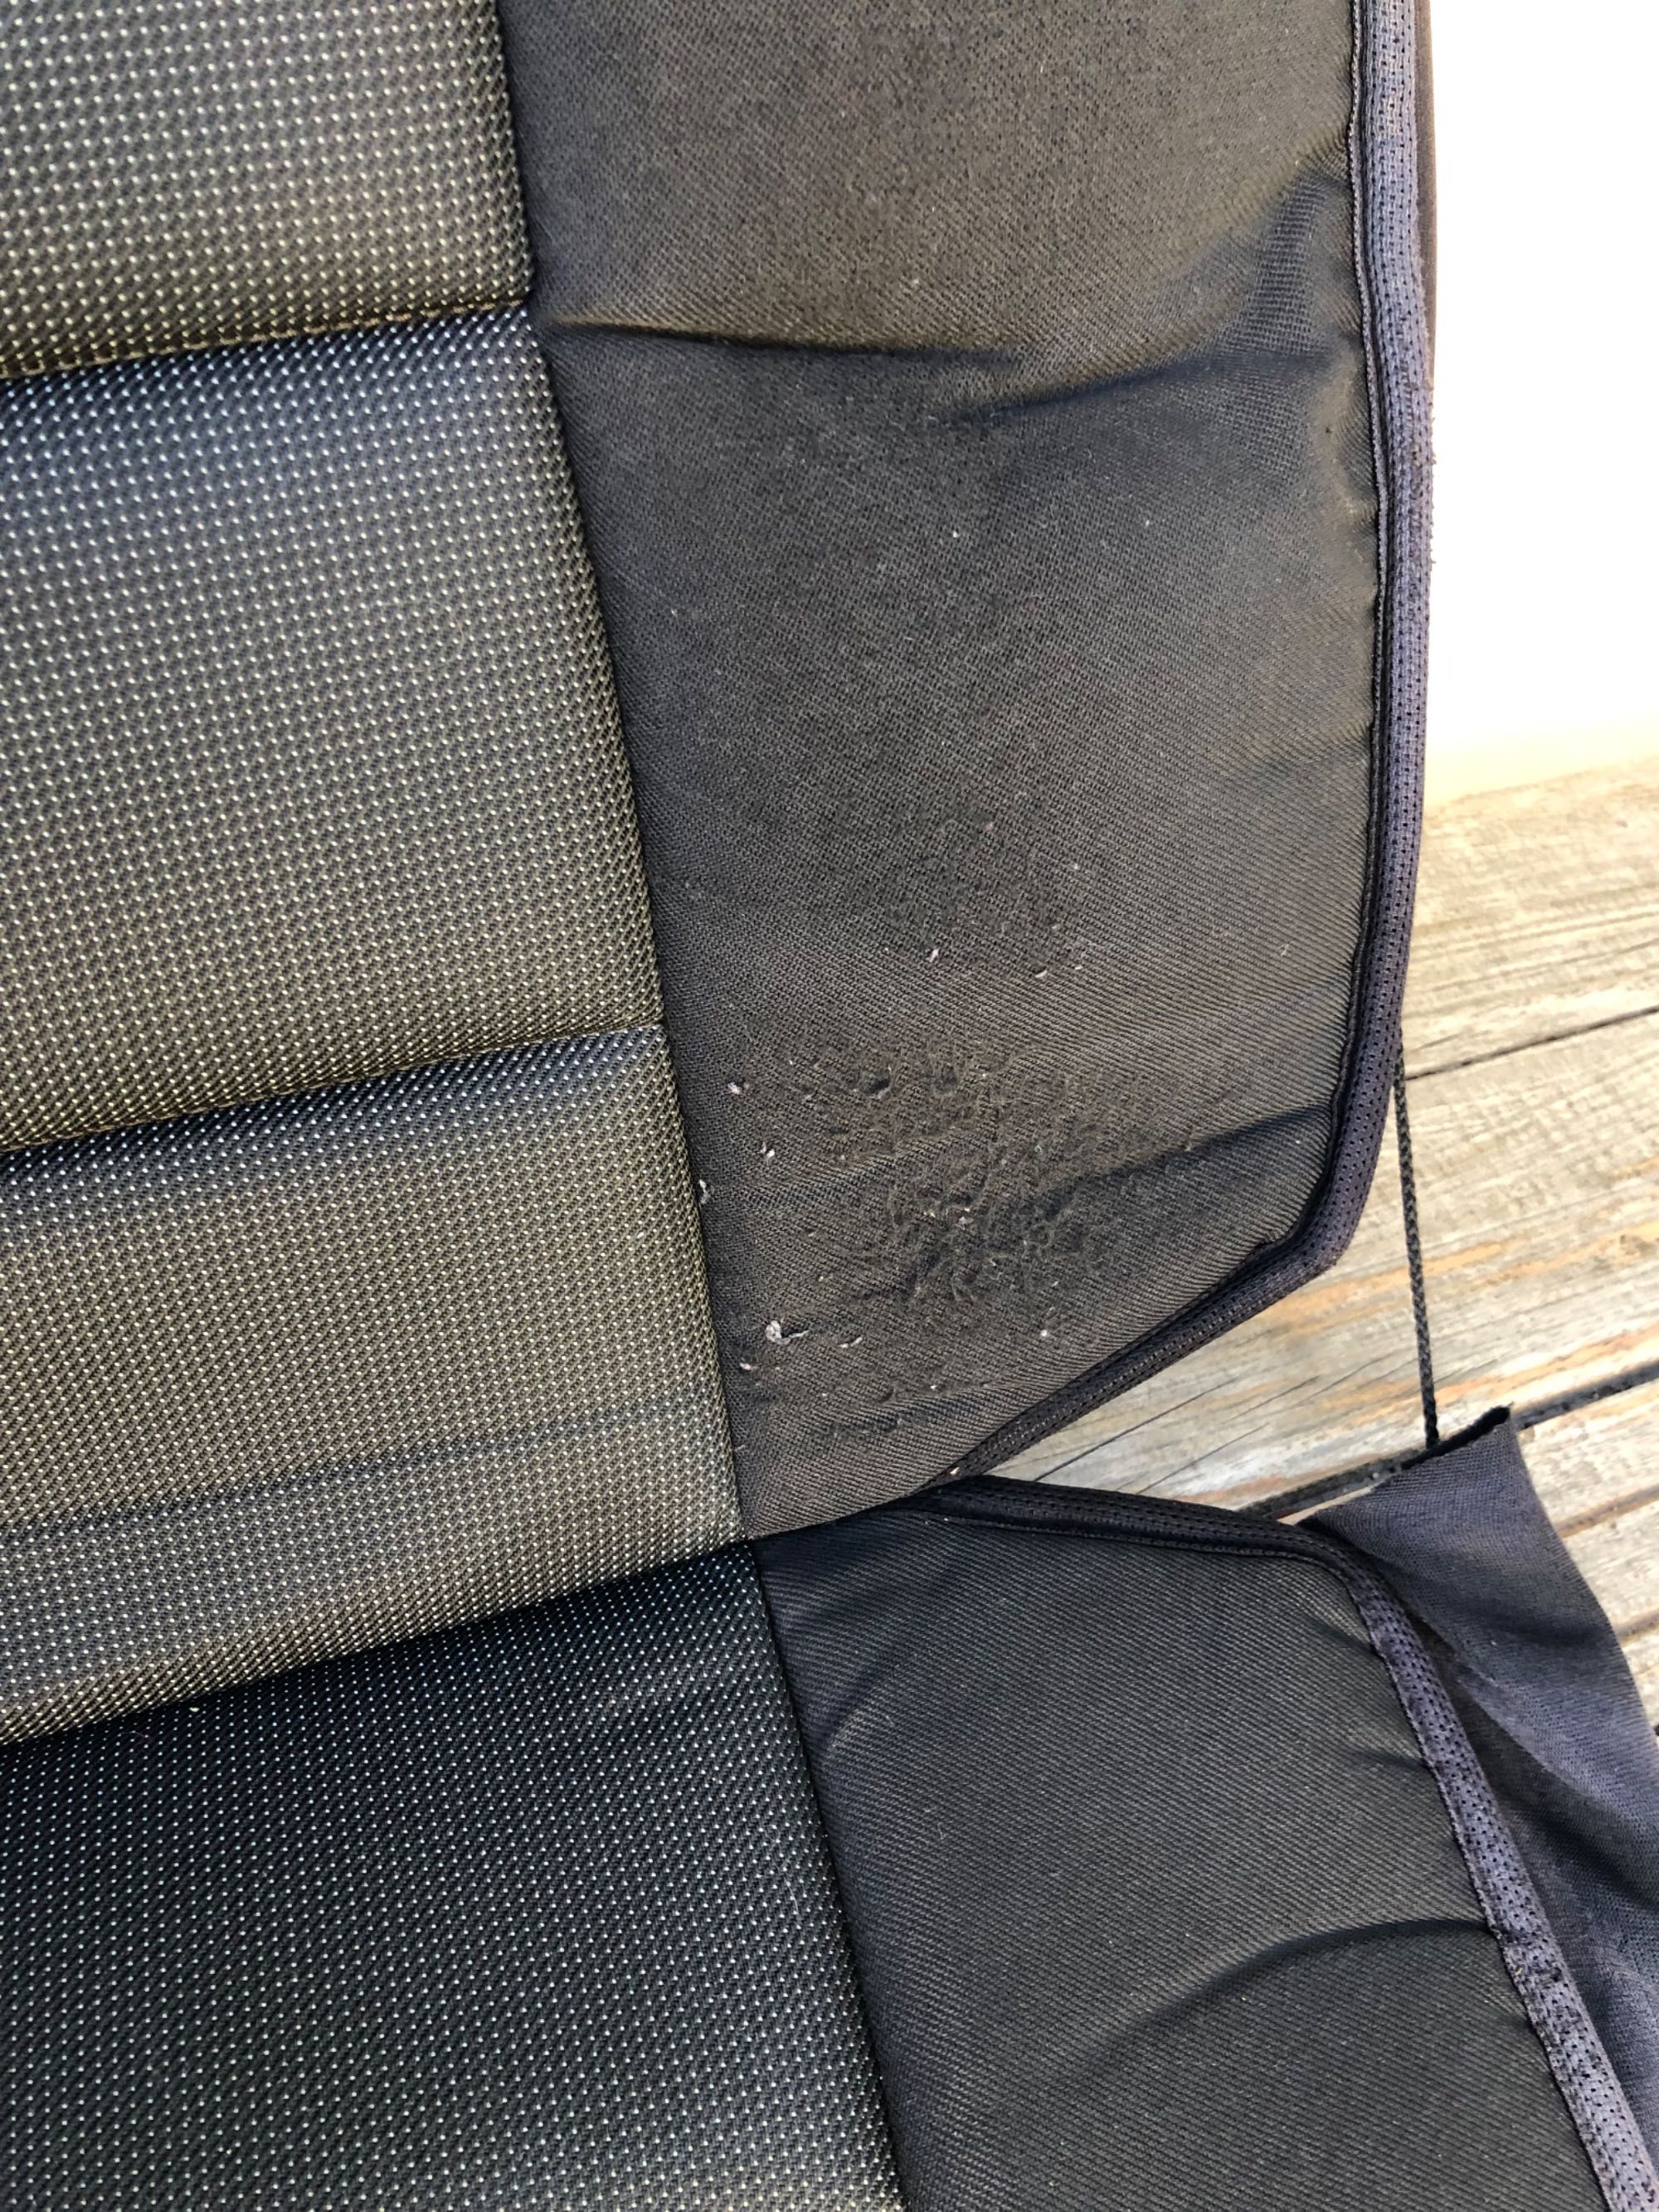 Комплект 2 бр. калъфи за предни седалки на автомобил - универсални